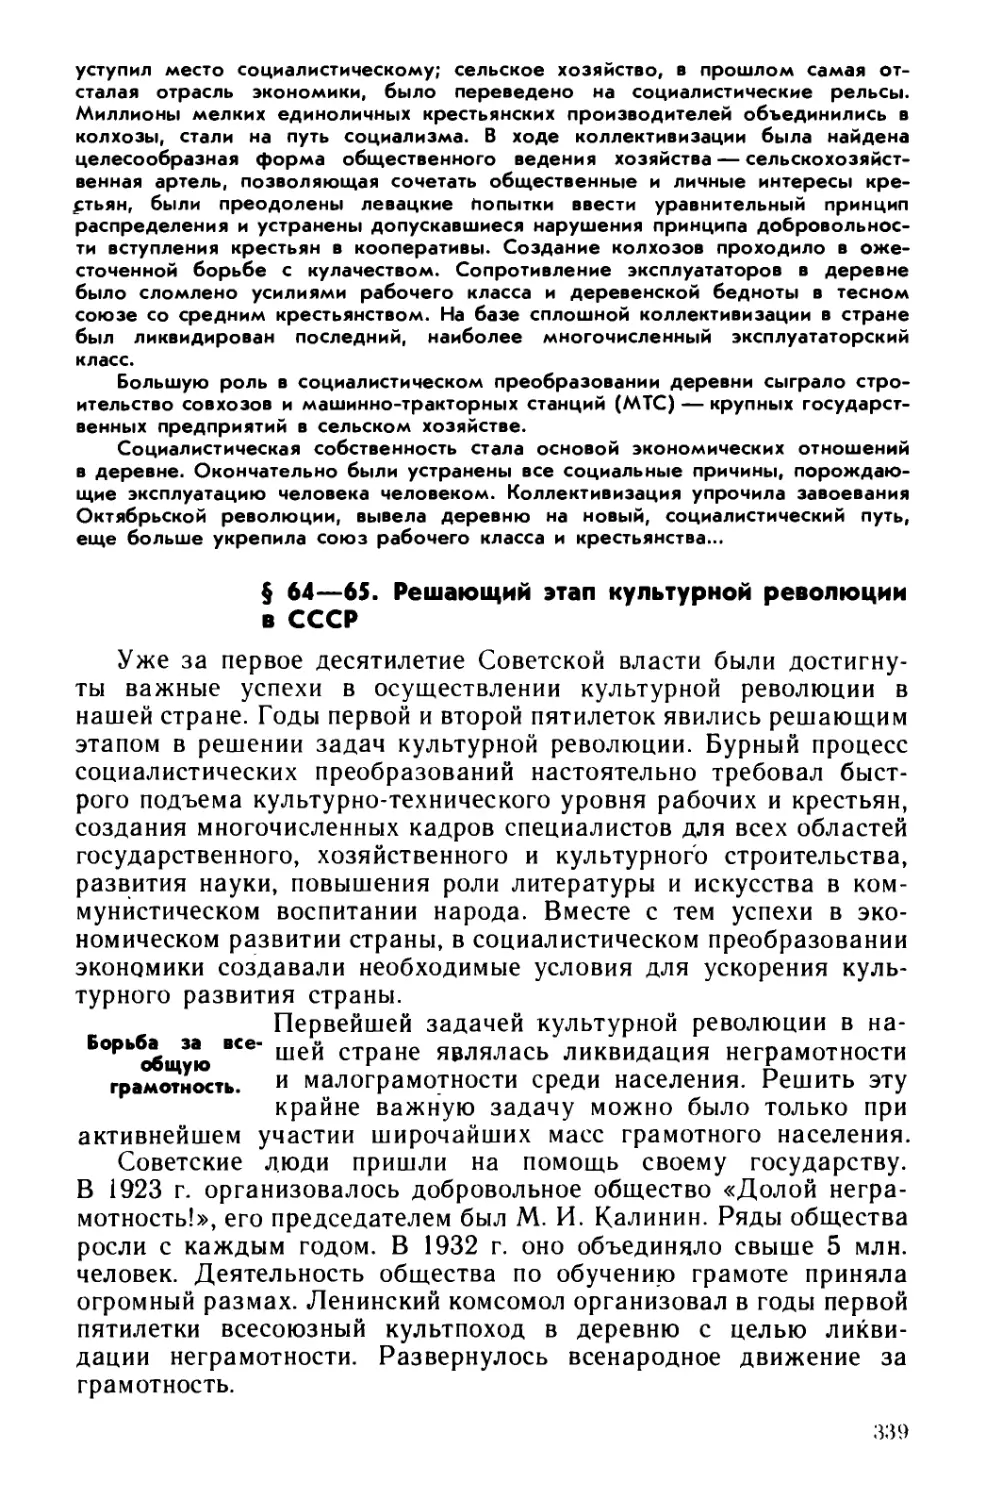 § 64—65. Решающий этап культурной революции в СССР